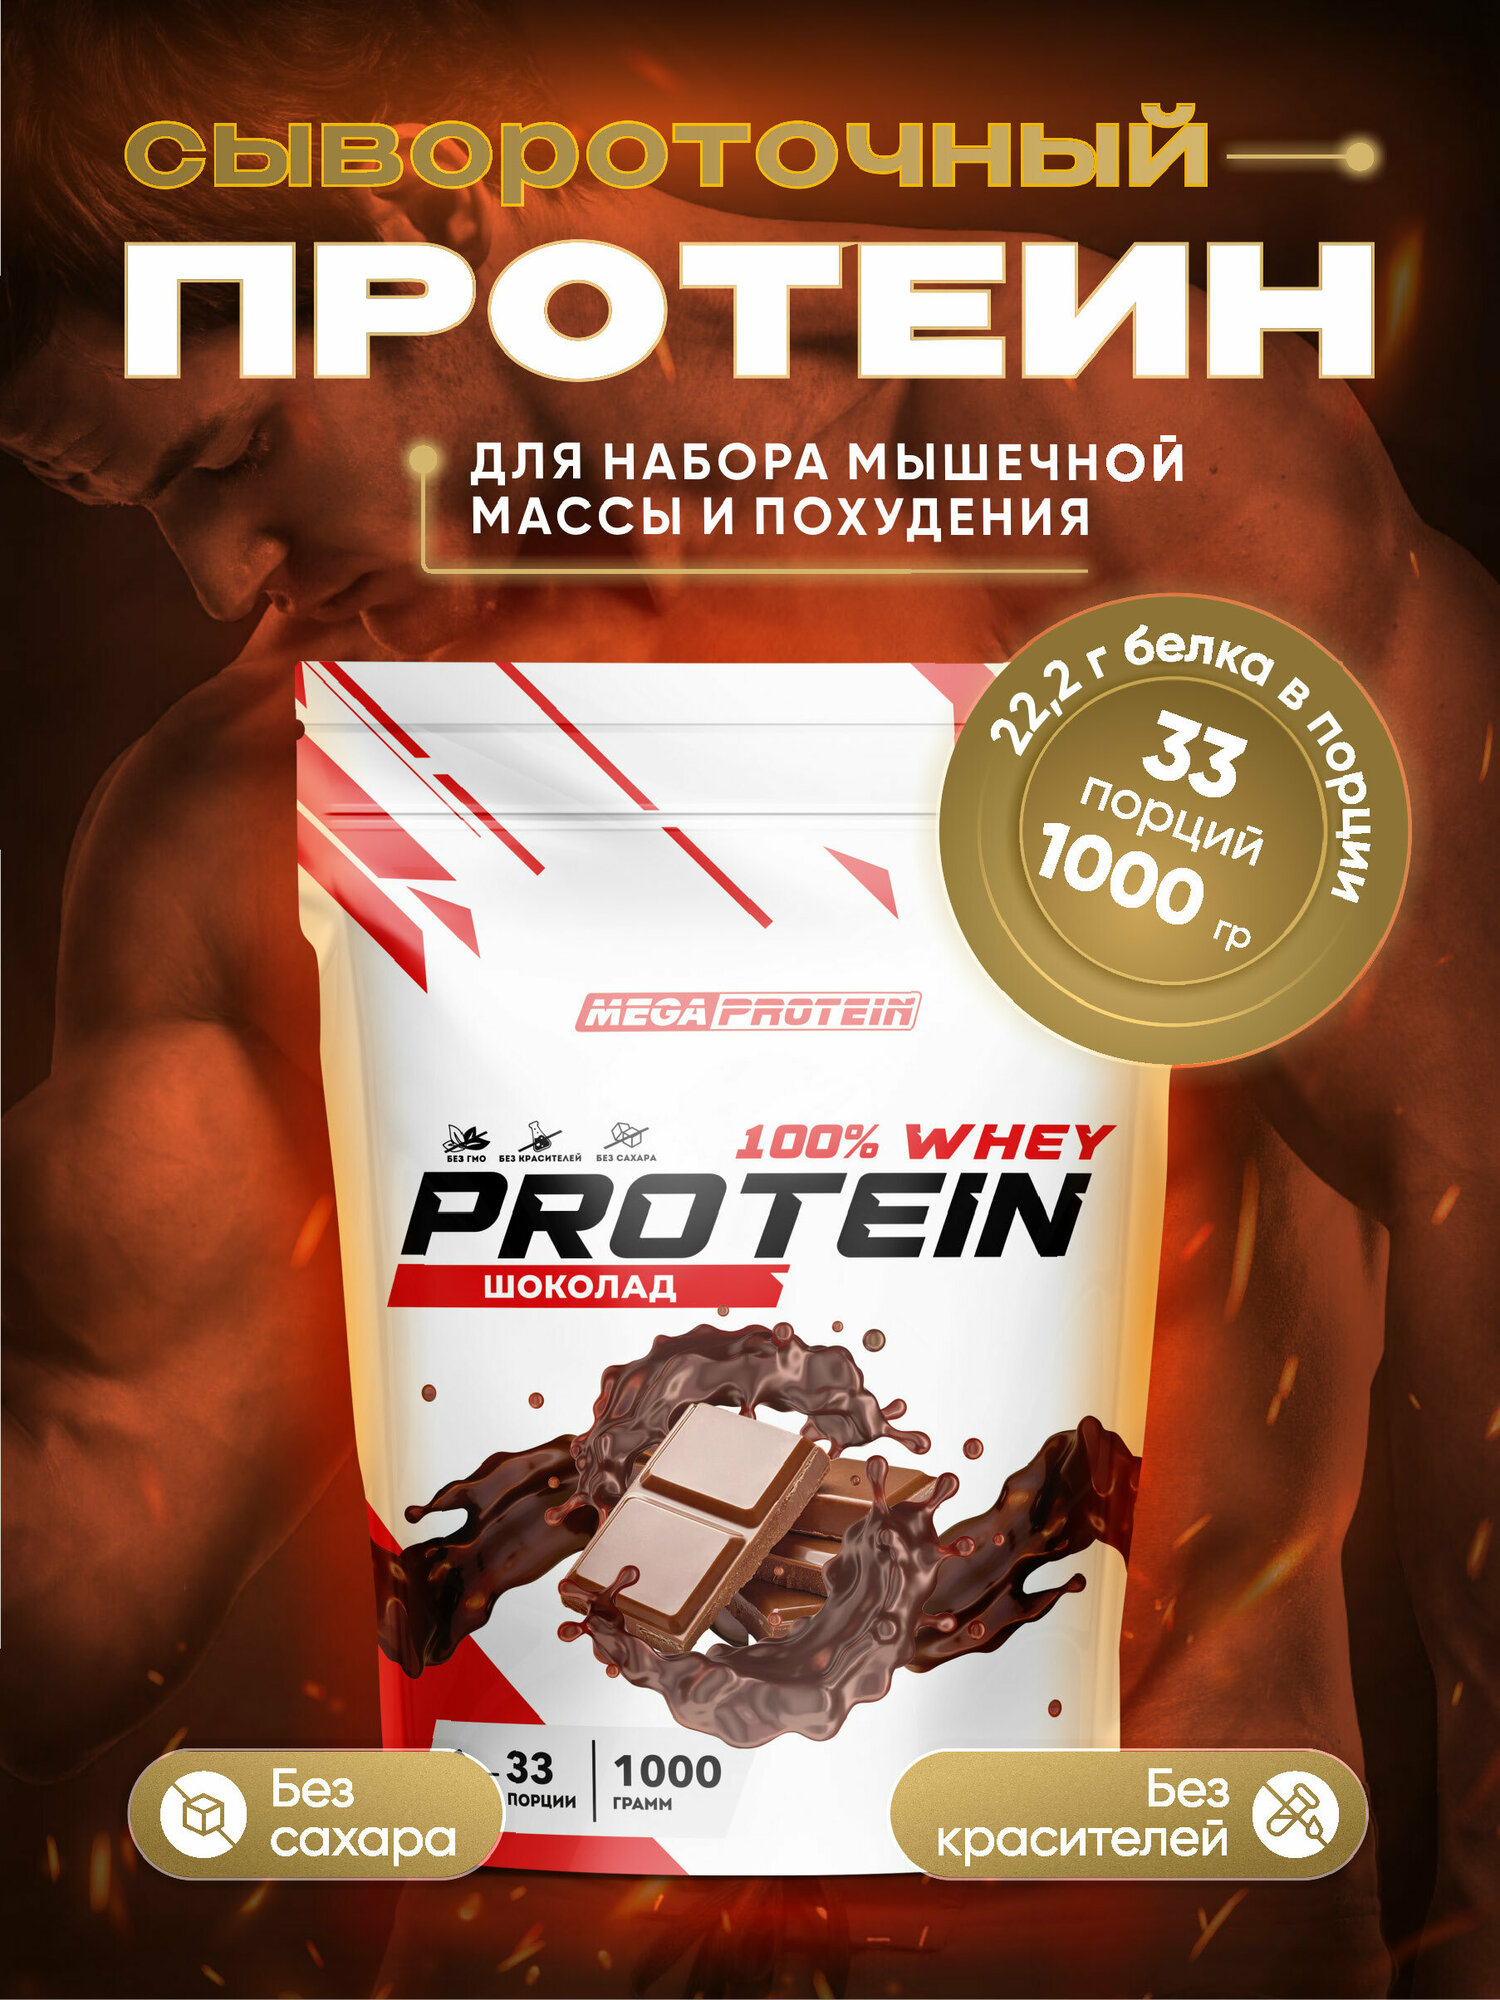 Сывороточный протеин / Протеиновый коктейль для набора мышечной массы и похудения со вкусом "Шоколад"